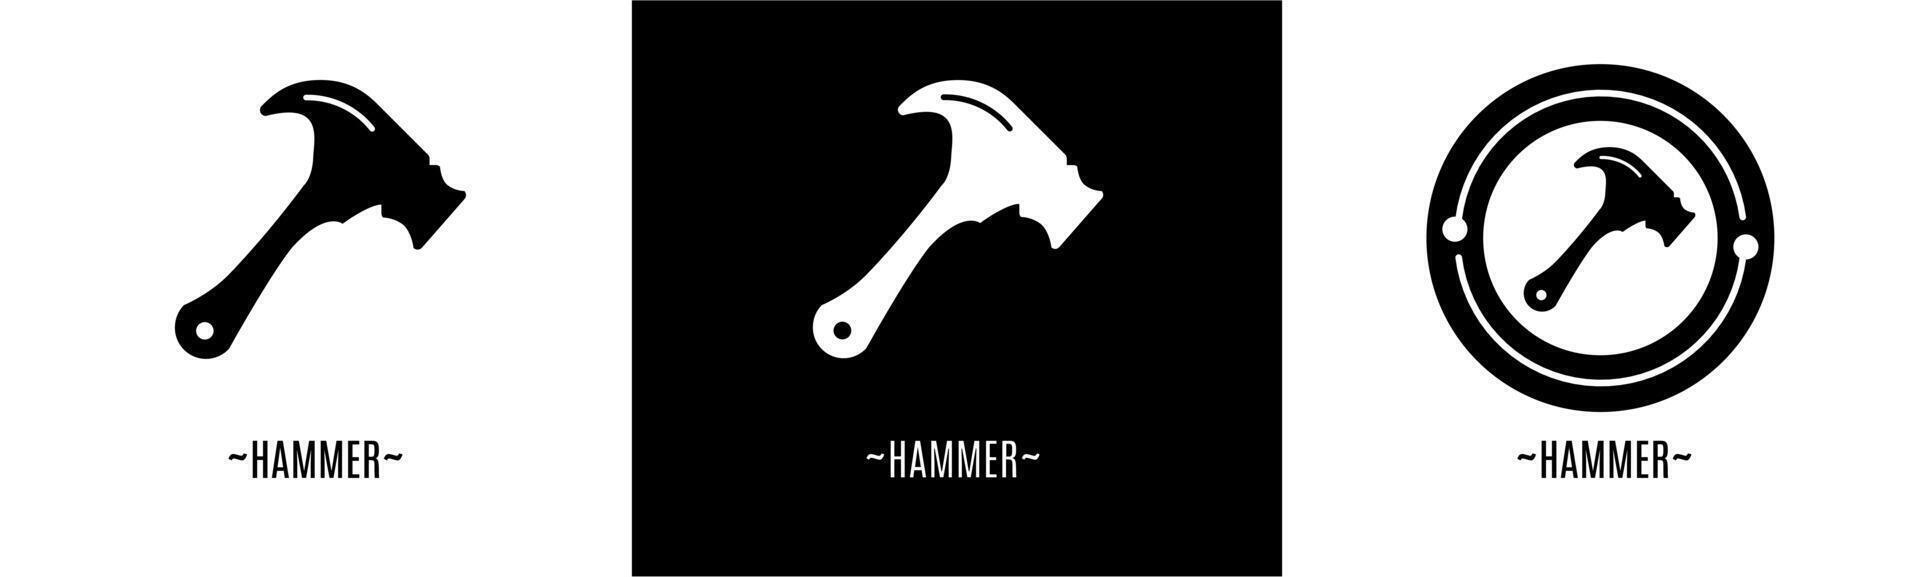 hammare logotyp uppsättning. samling av svart och vit logotyper. stock vektor. vektor